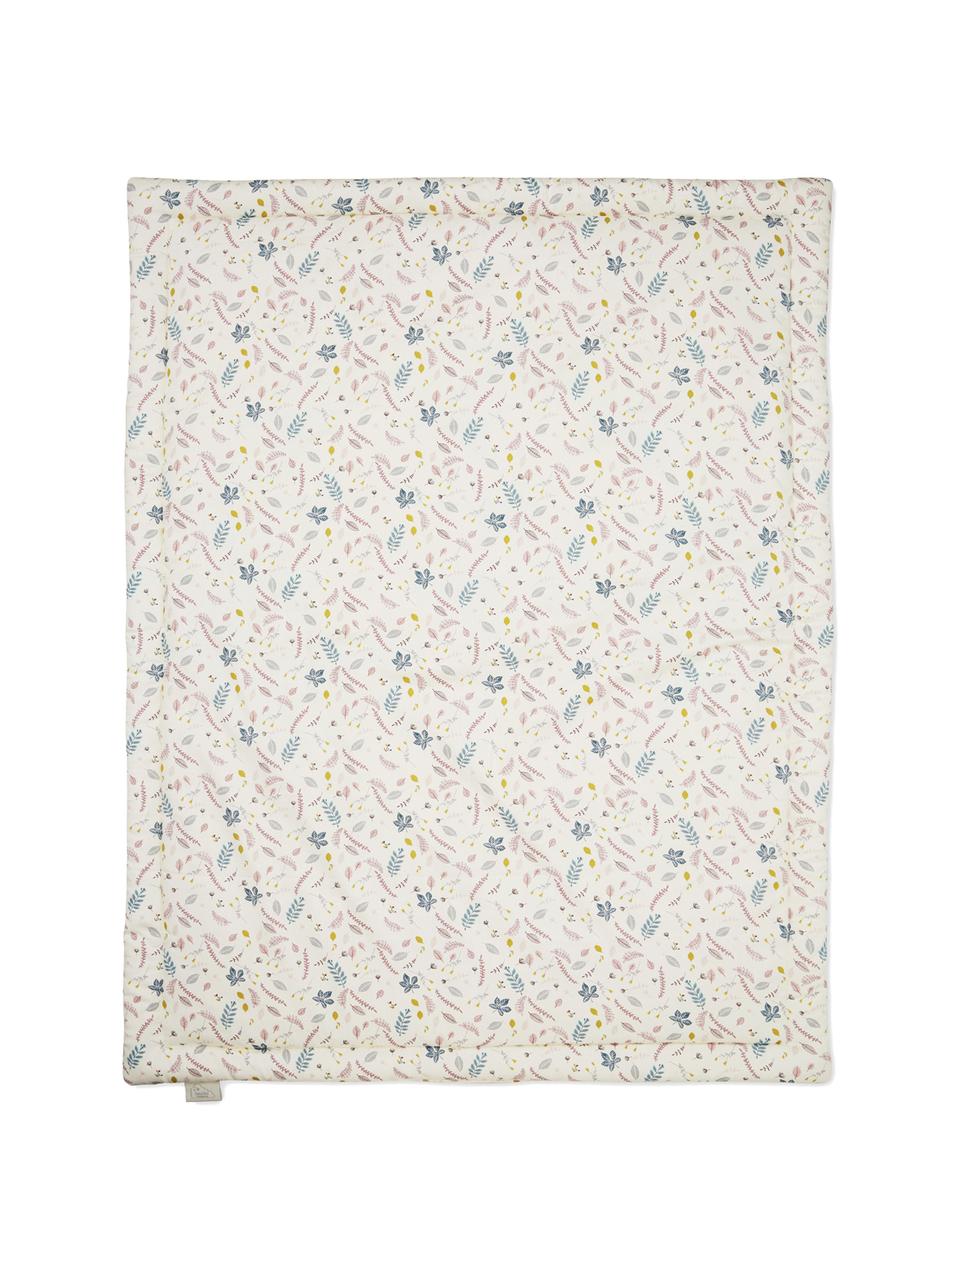 Couverture en coton bio Pressed Leaves, Crème, rose, bleu, gris, larg. 90 x long. 120 cm